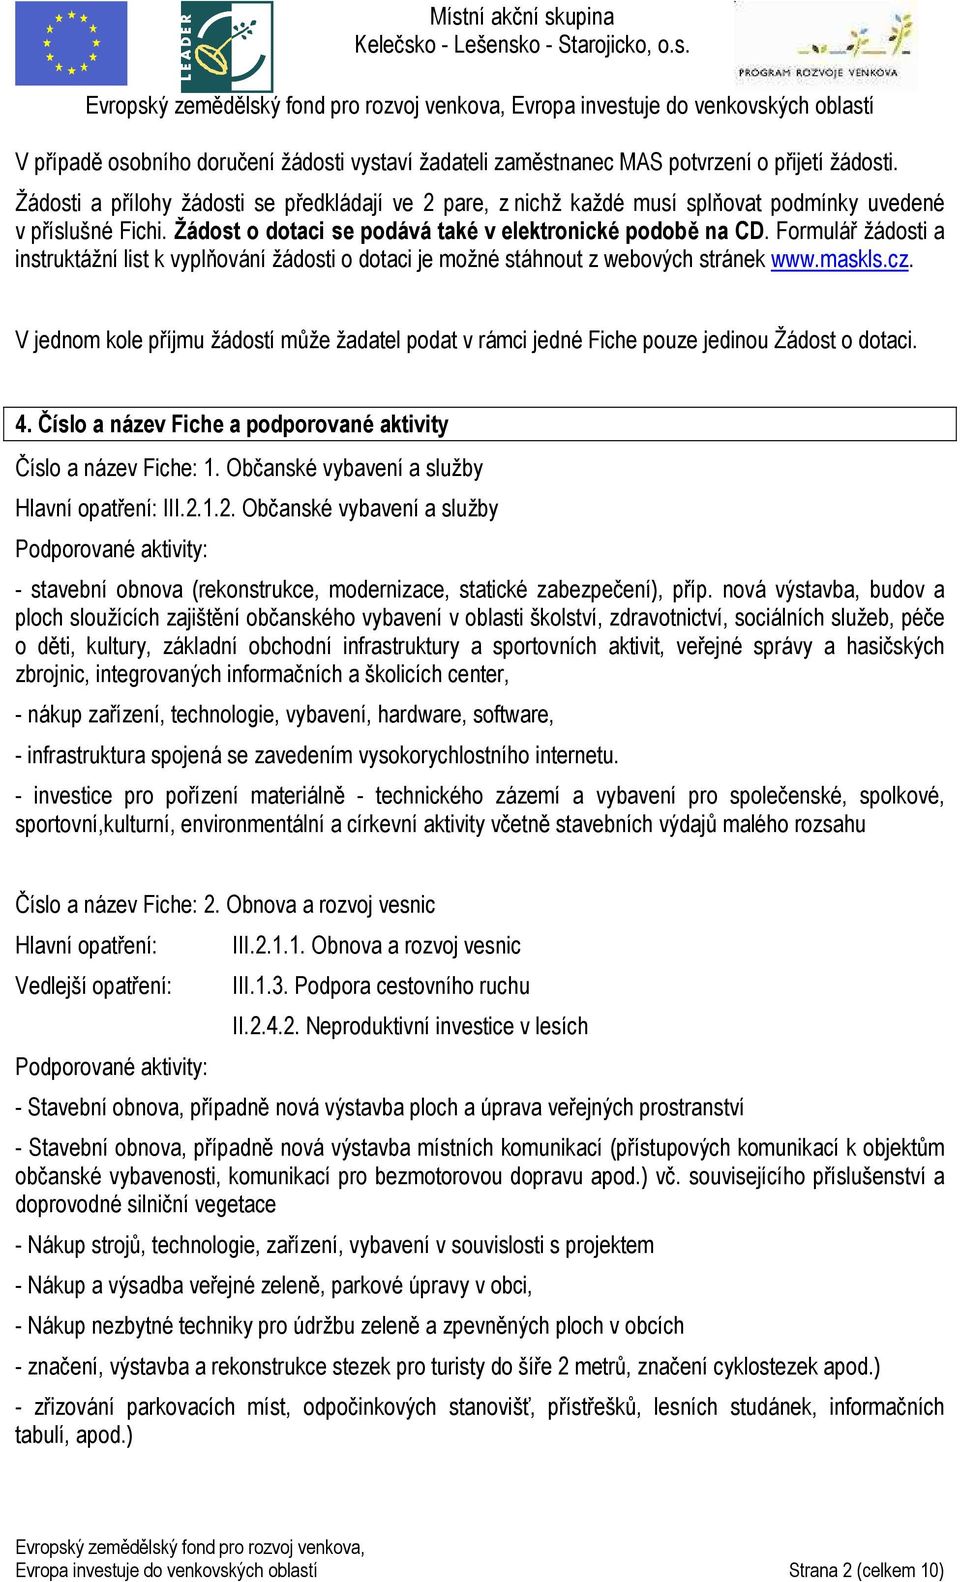 Formulář žádosti a instruktážní list k vyplňování žádosti o dotaci je možné stáhnout z webových stránek www.maskls.cz.